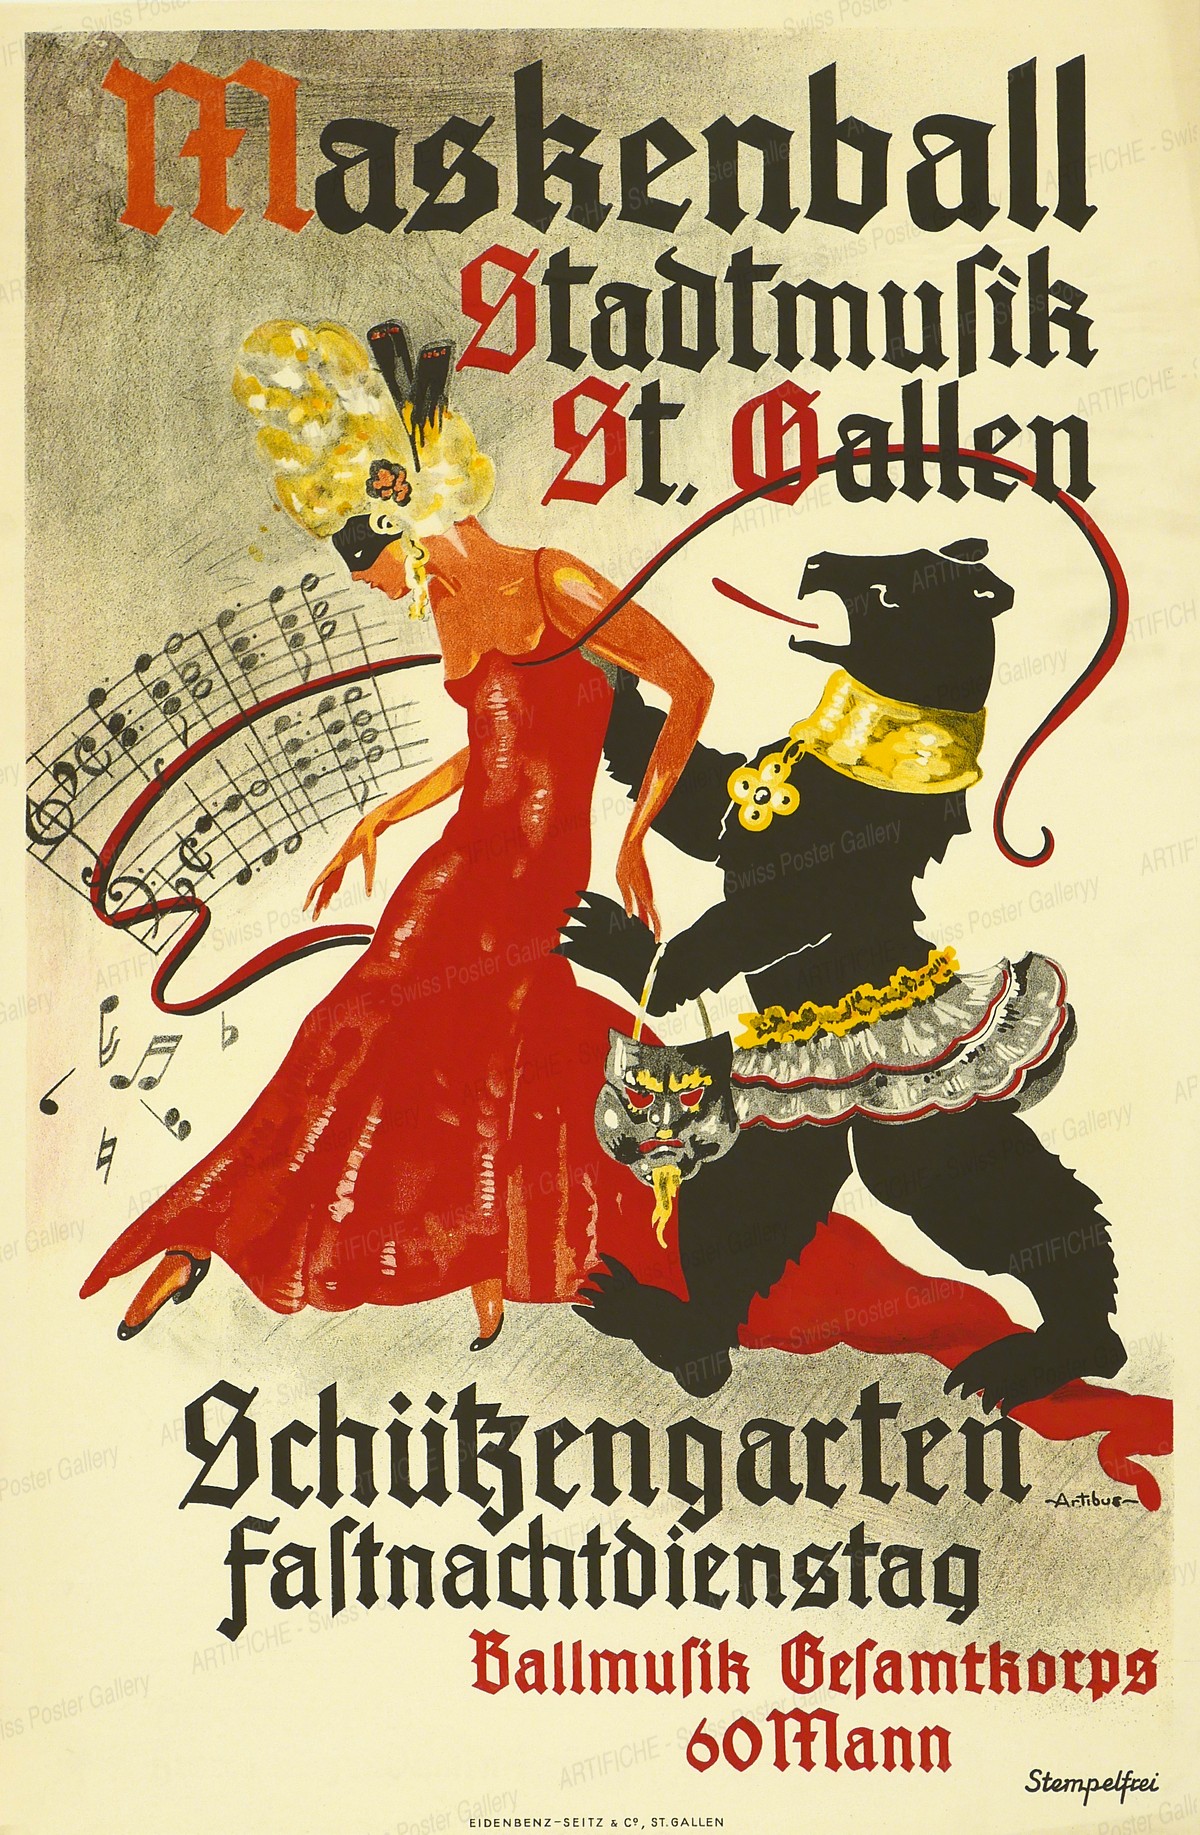 Masquerade ball Stadtmusik St. Gallen – Schützengarten Carnival Tuesday